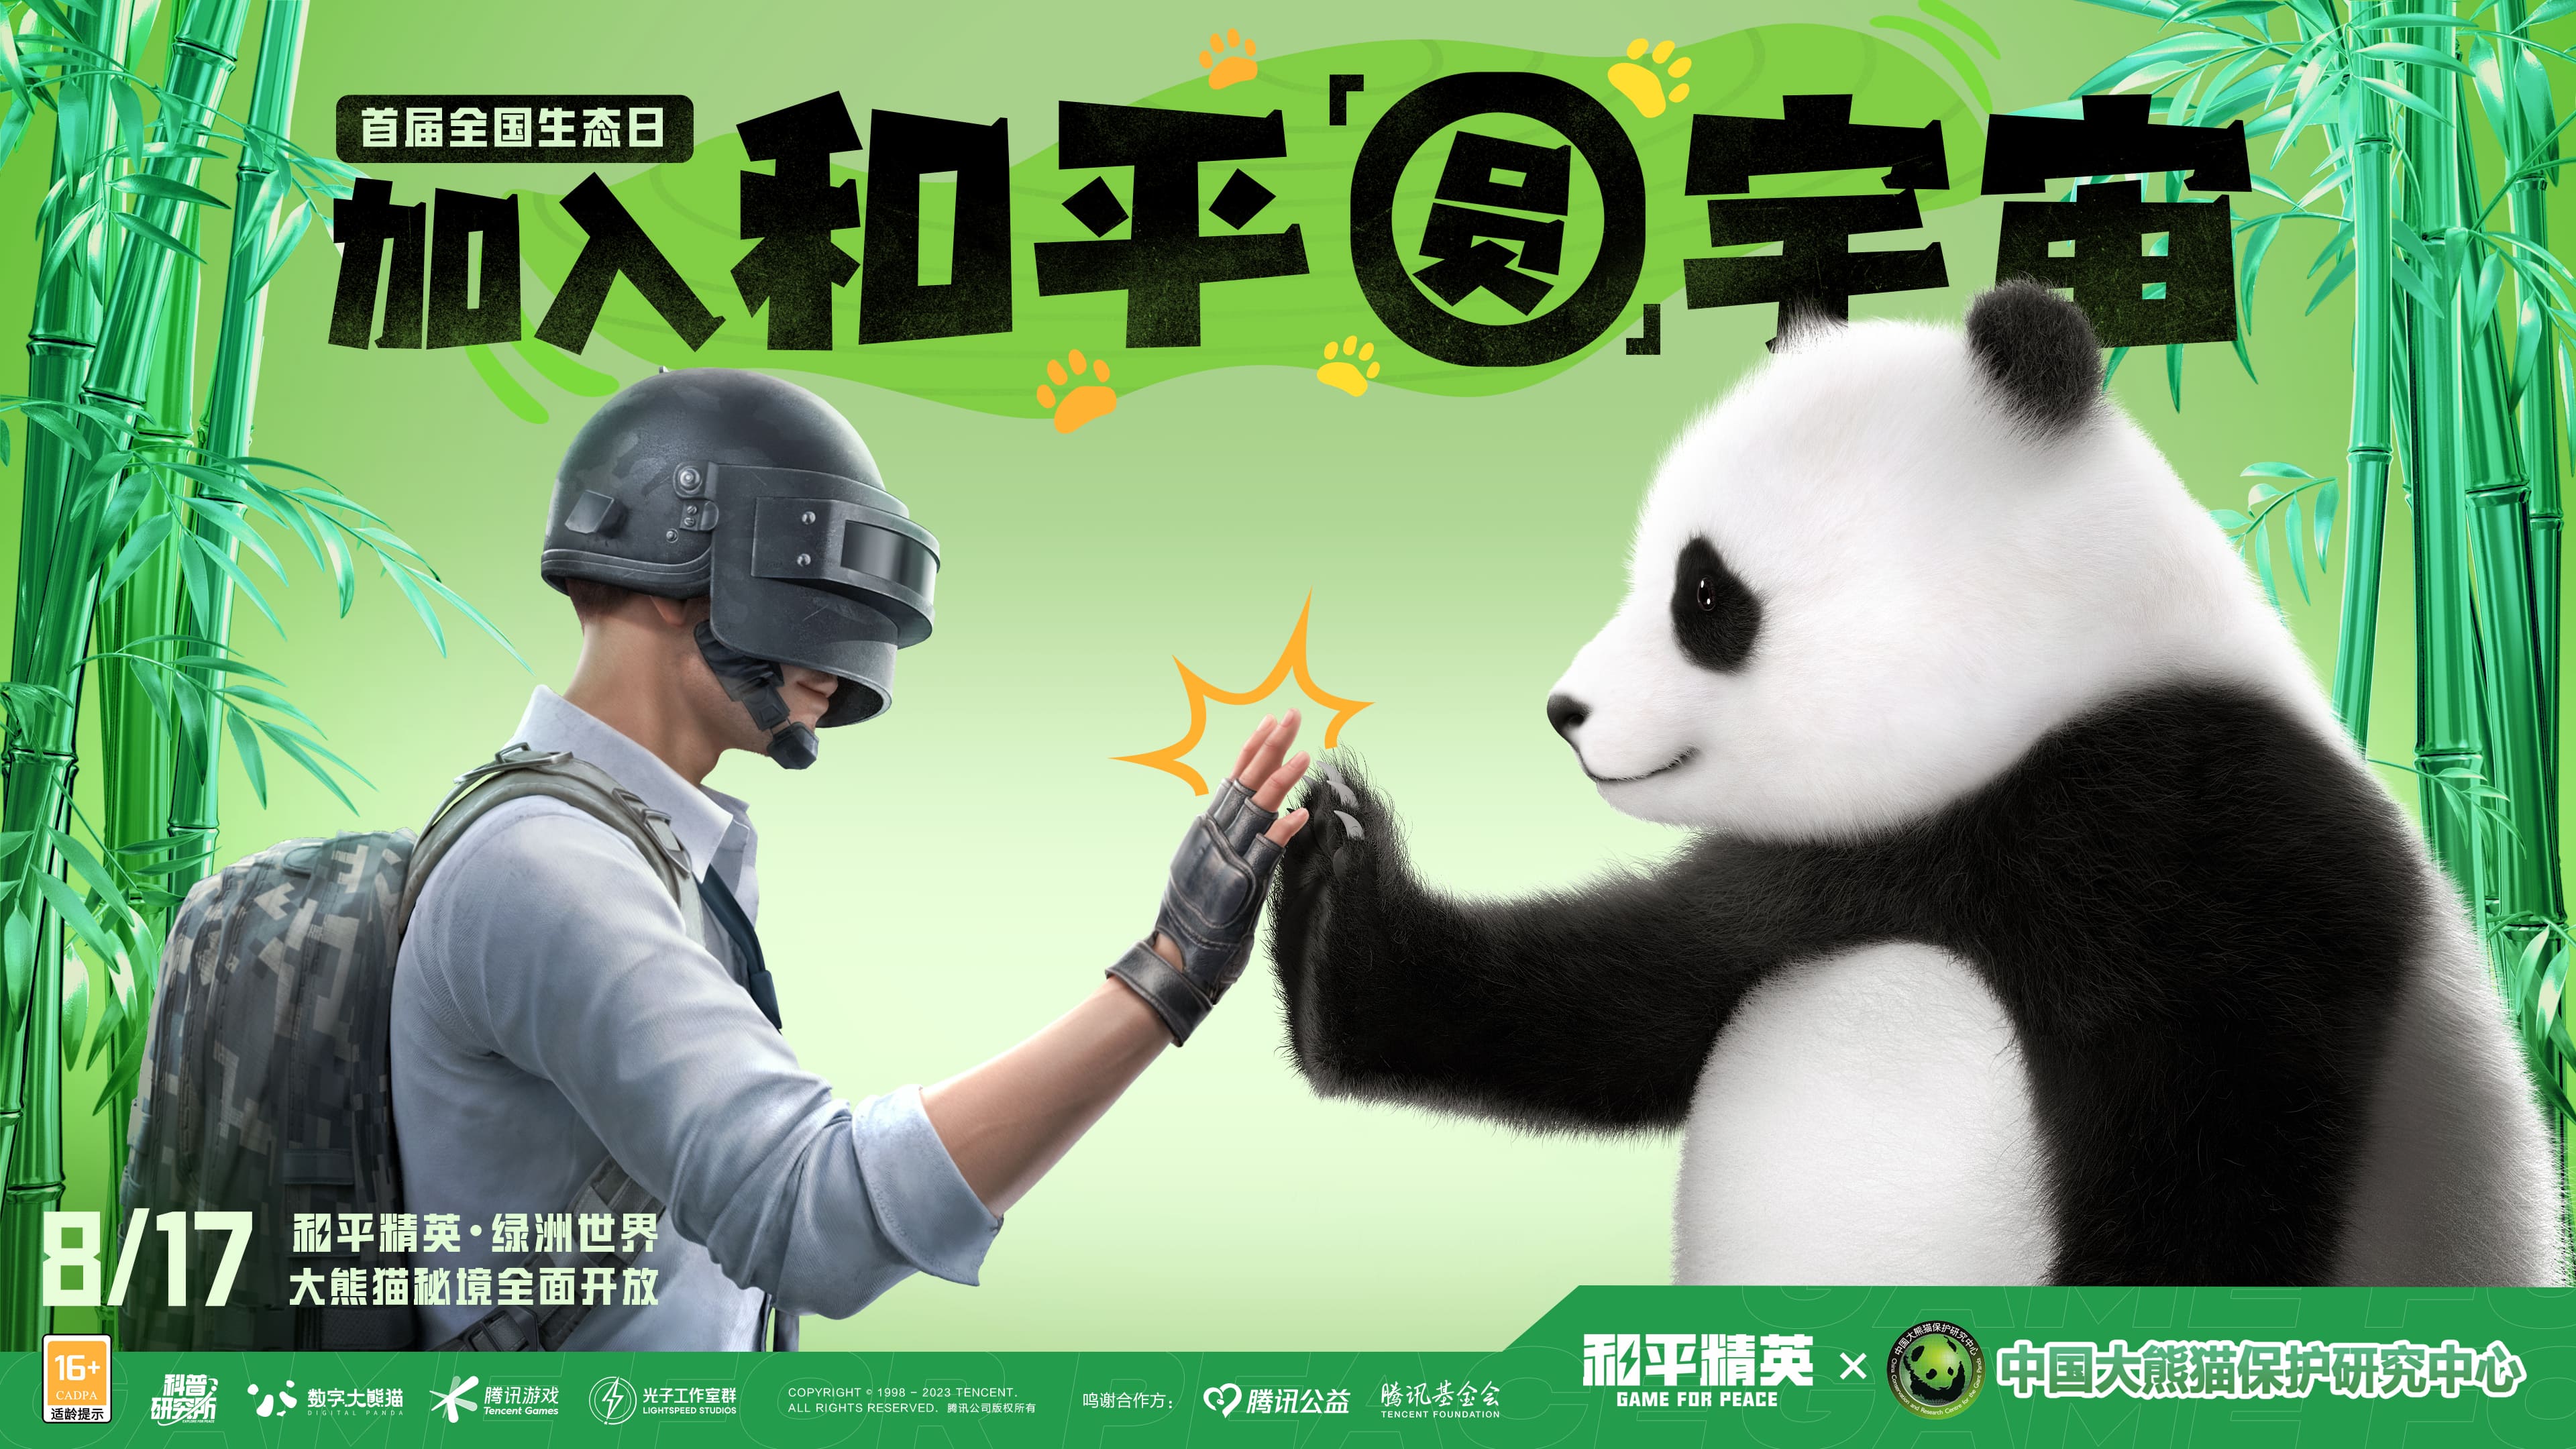 《和平精英》與中國大熊貓保護研究中心打造“大熊貓秘境”玩法